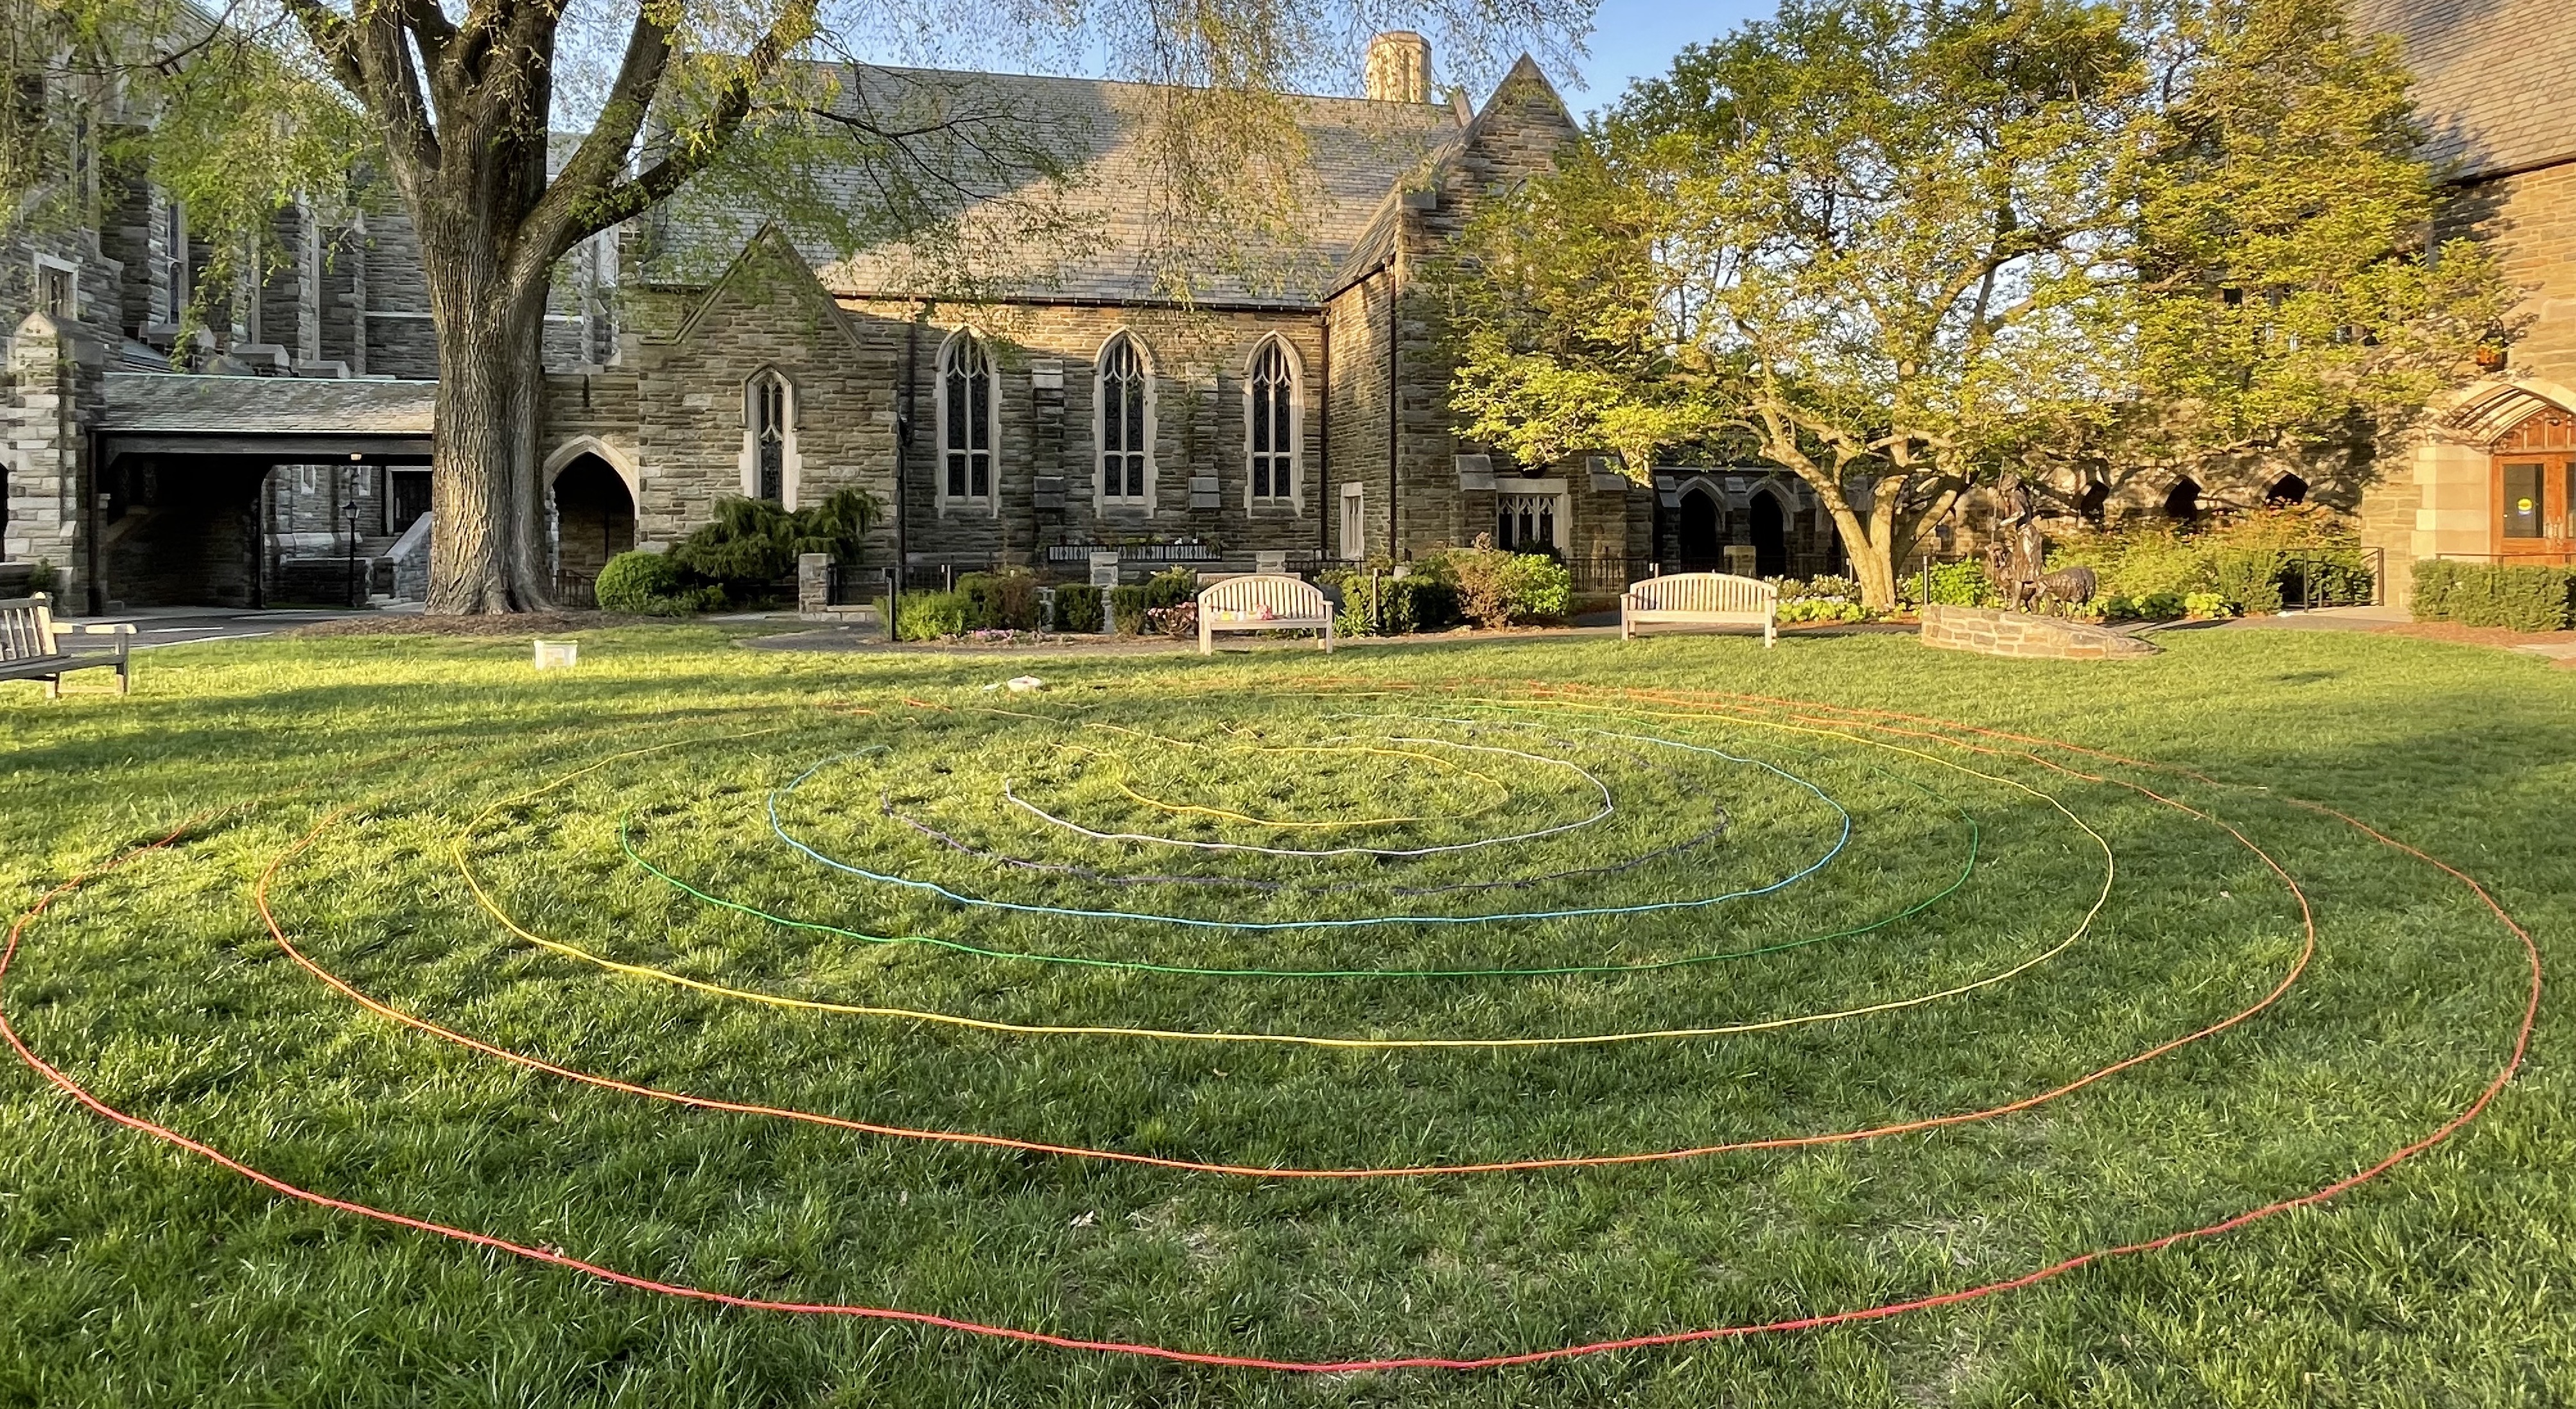 Rope labyrinth at Bryn Mawr Presbyterian Church